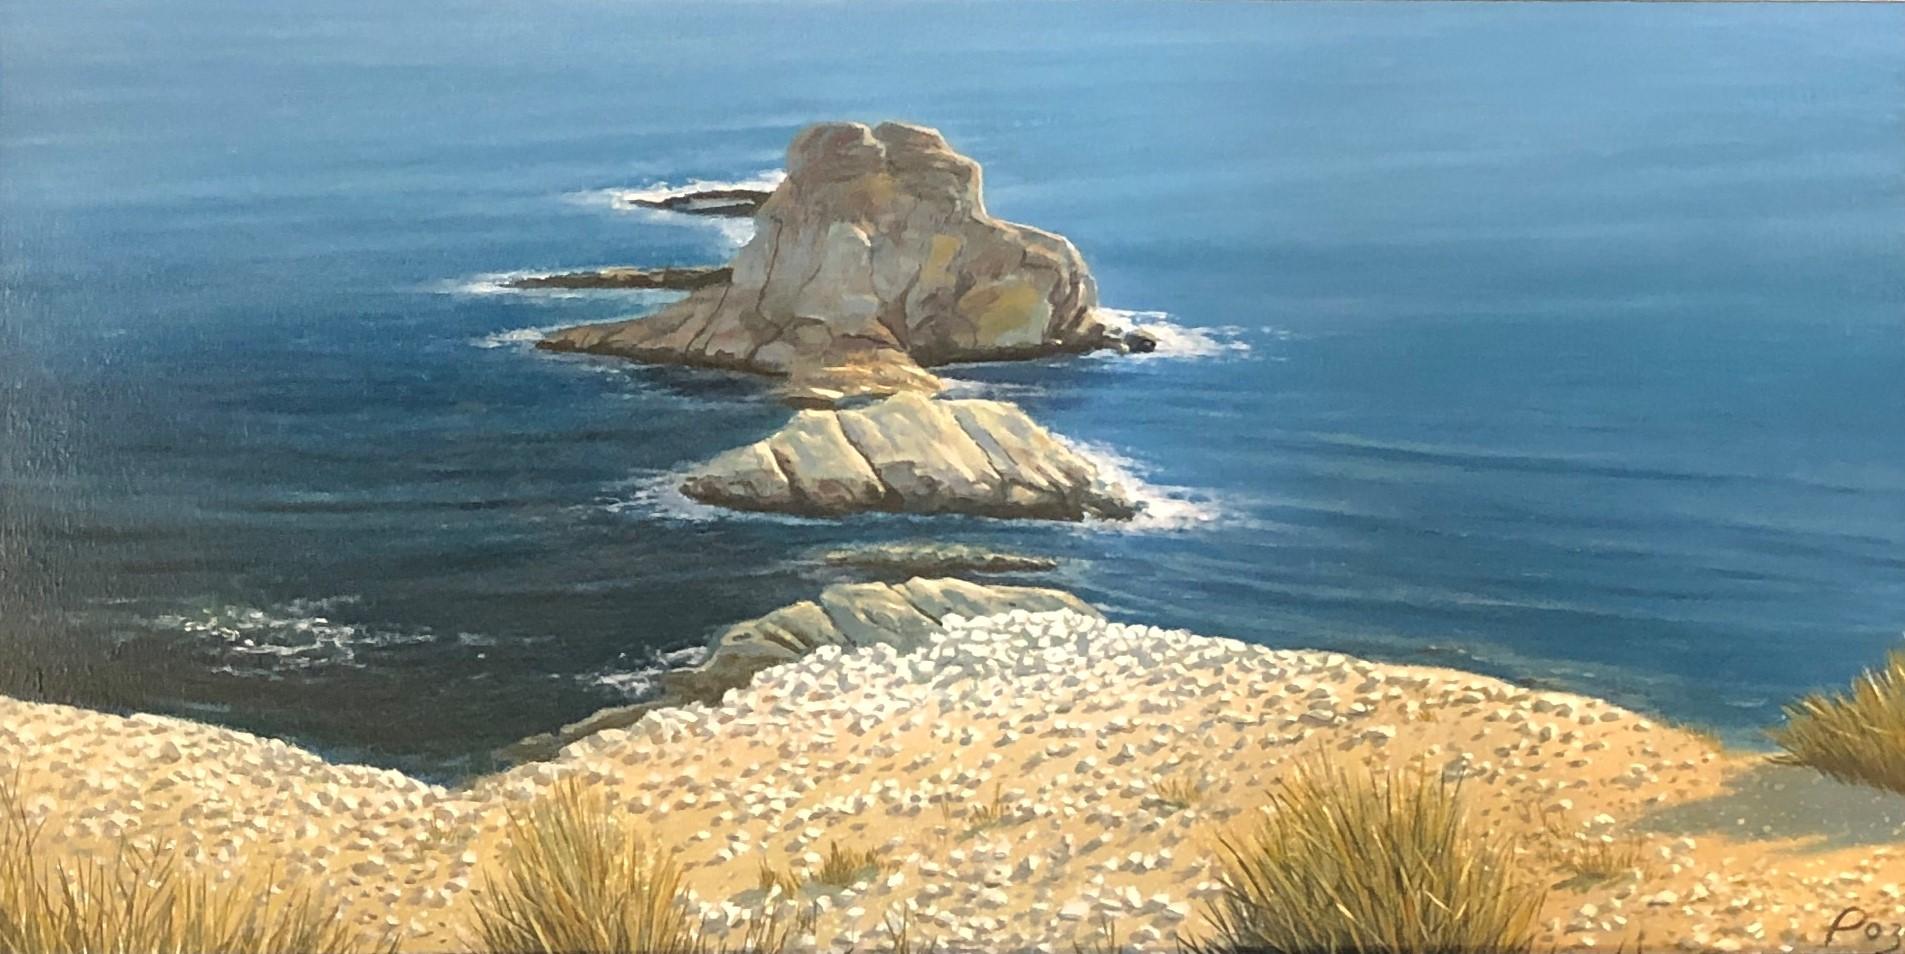 René Monzón Relova “Pozas” Landscape Painting - Las Vacaciones de Jose, Surreal Landscape of Rocky Islands off a Sea Coast